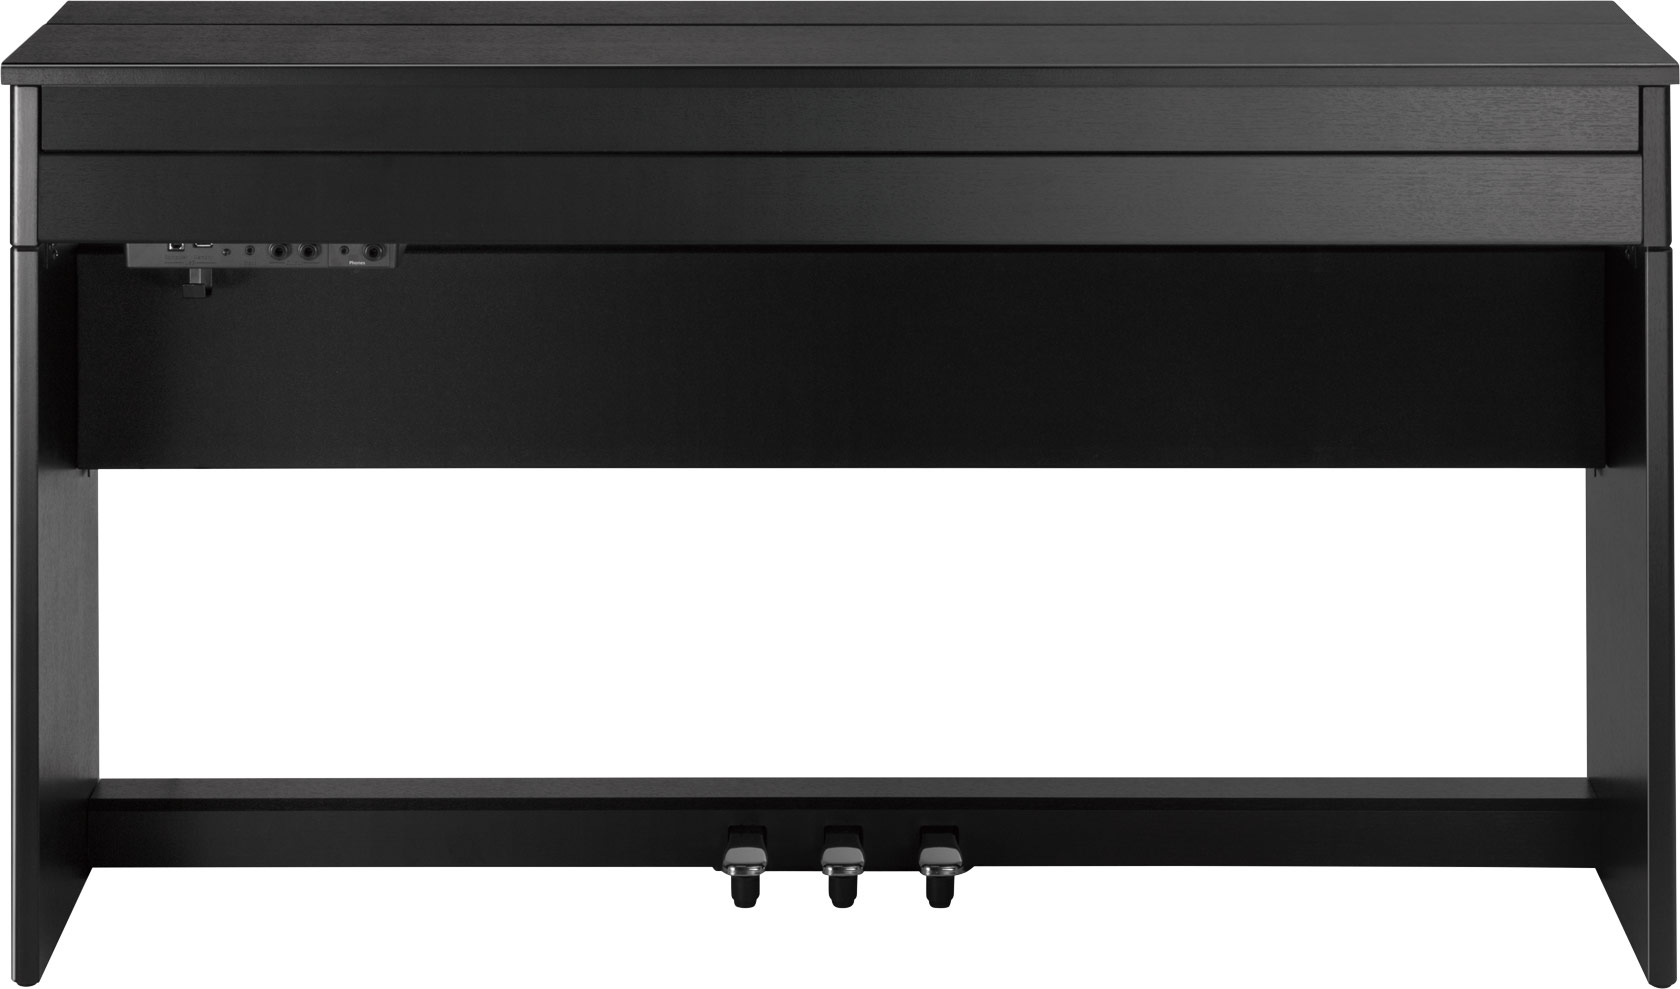 Roland Dp603 - Contemporary Black - Piano digital con mueble - Variation 1